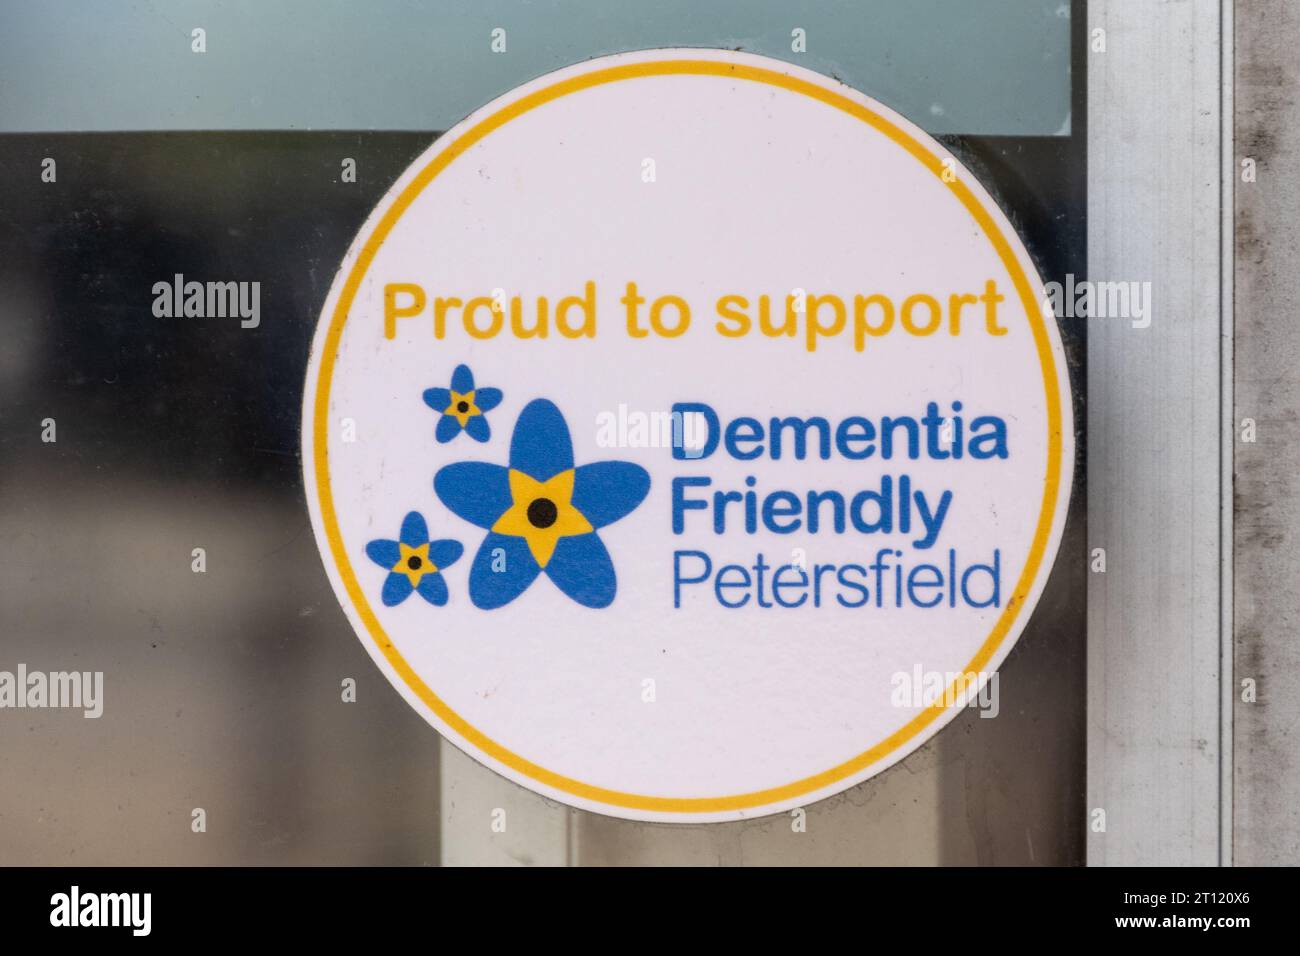 Siamo orgogliosi di supportare l'adesivo Petersfield Friendly per la demenza nella finestra della biblioteca pubblica, Inghilterra, Regno Unito Foto Stock